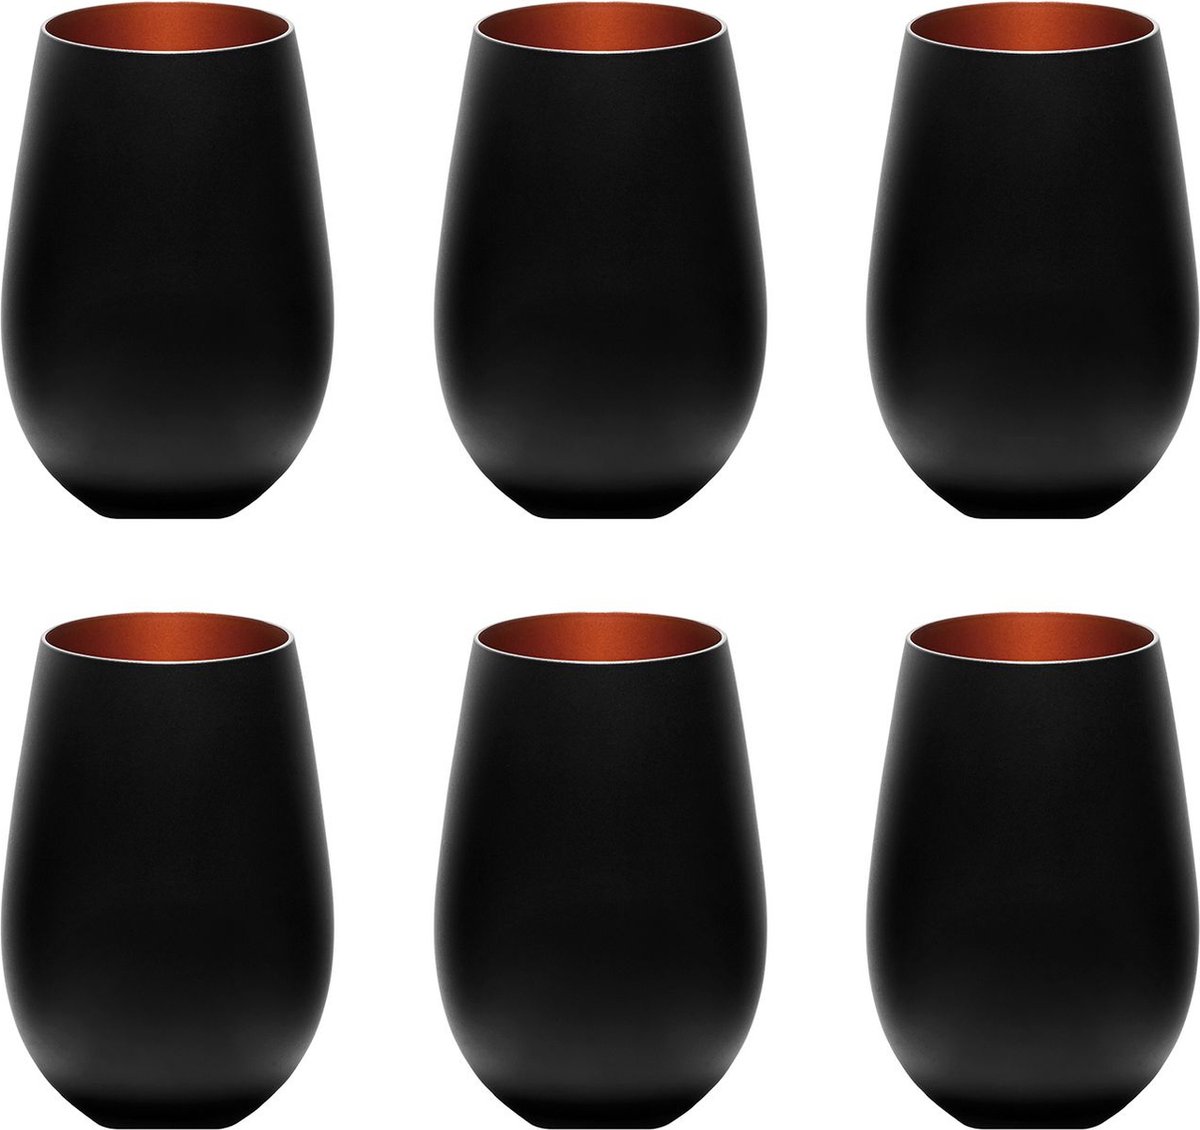 Gekleurde drinkglazen ELEMENTS set van 6, tweekleurig, zwart-brons, 456 ml